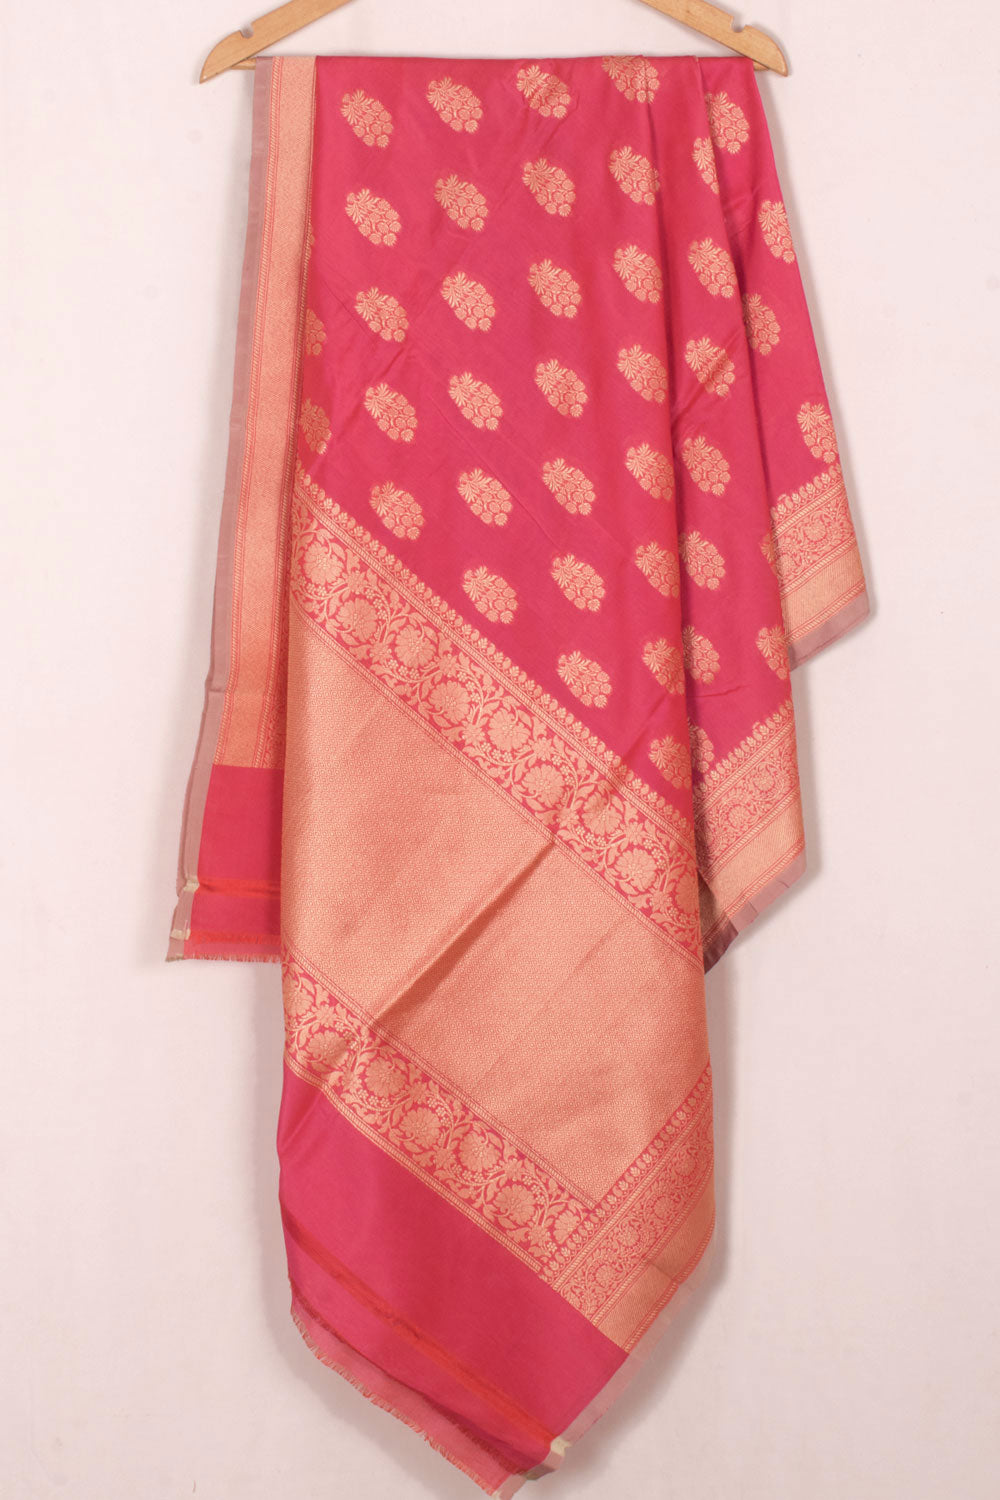 Handloom Banarasi Katrua Silk Cotton Dupatta with Floral Butis 